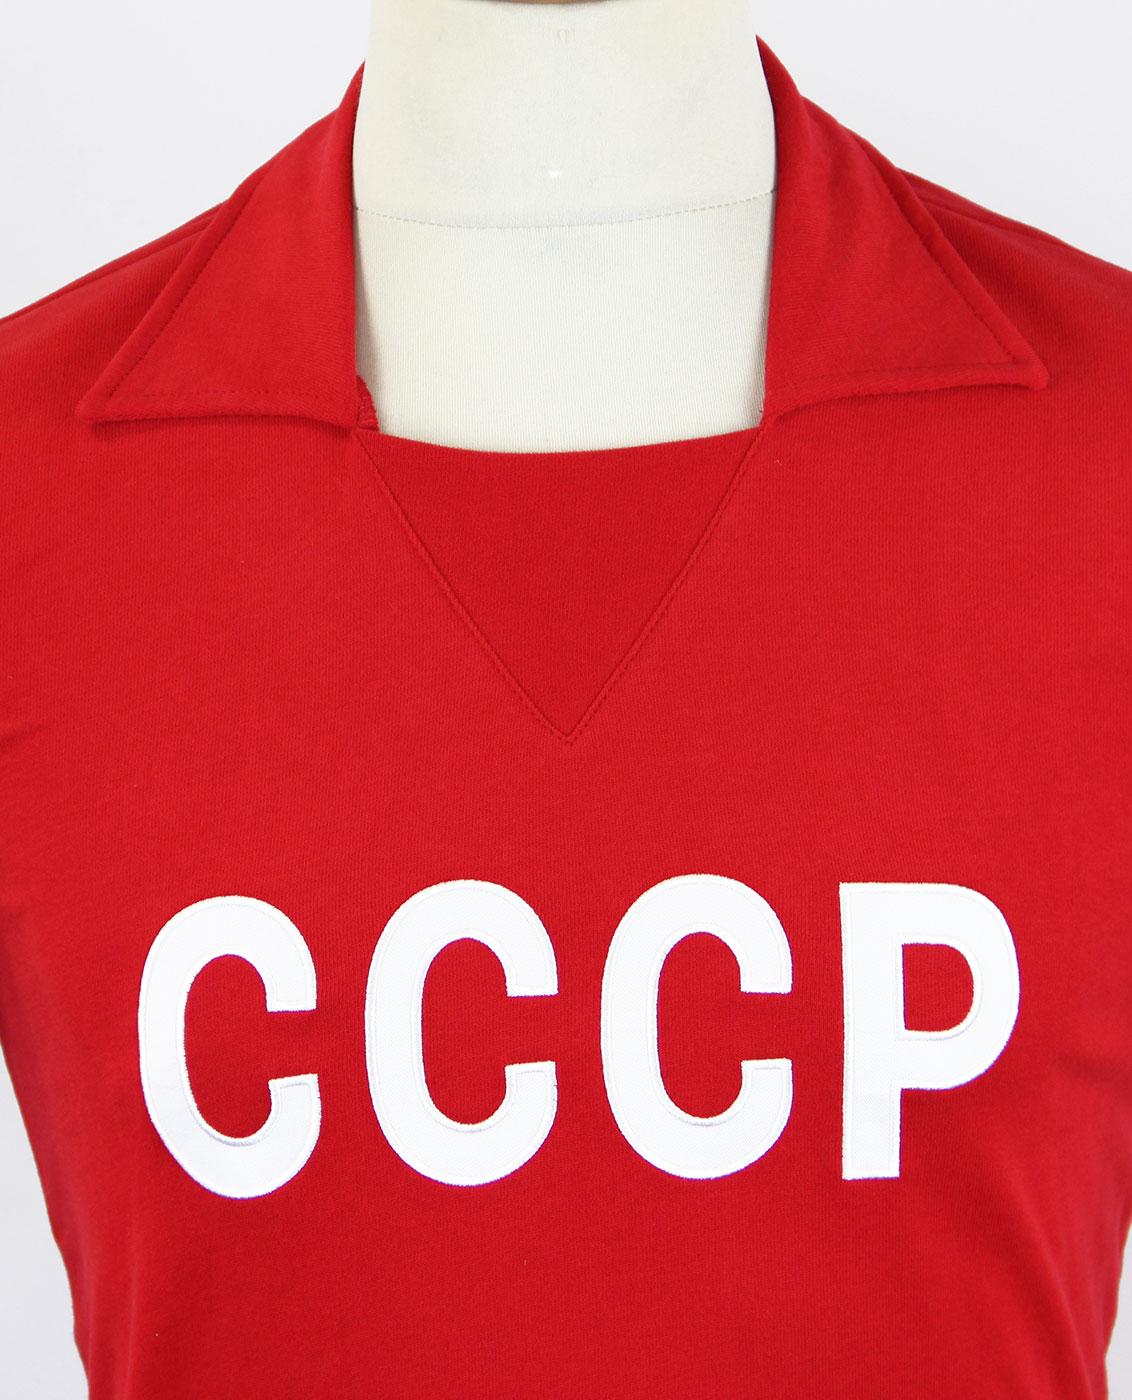 CCCP 1960s Retro Football Shirt - TOFFS